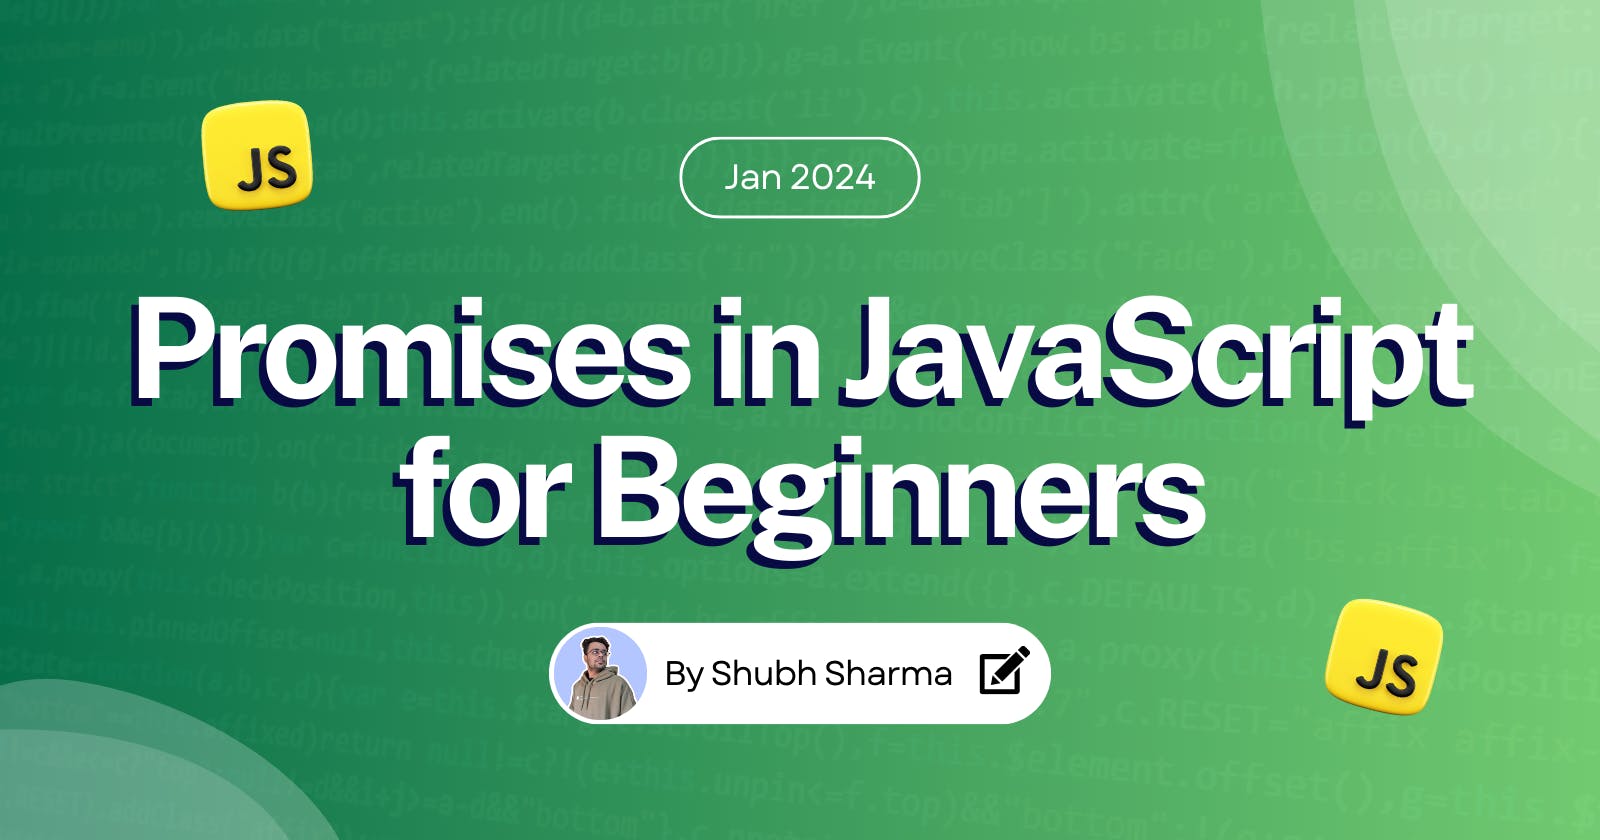 Promises in JavaScript for Beginners